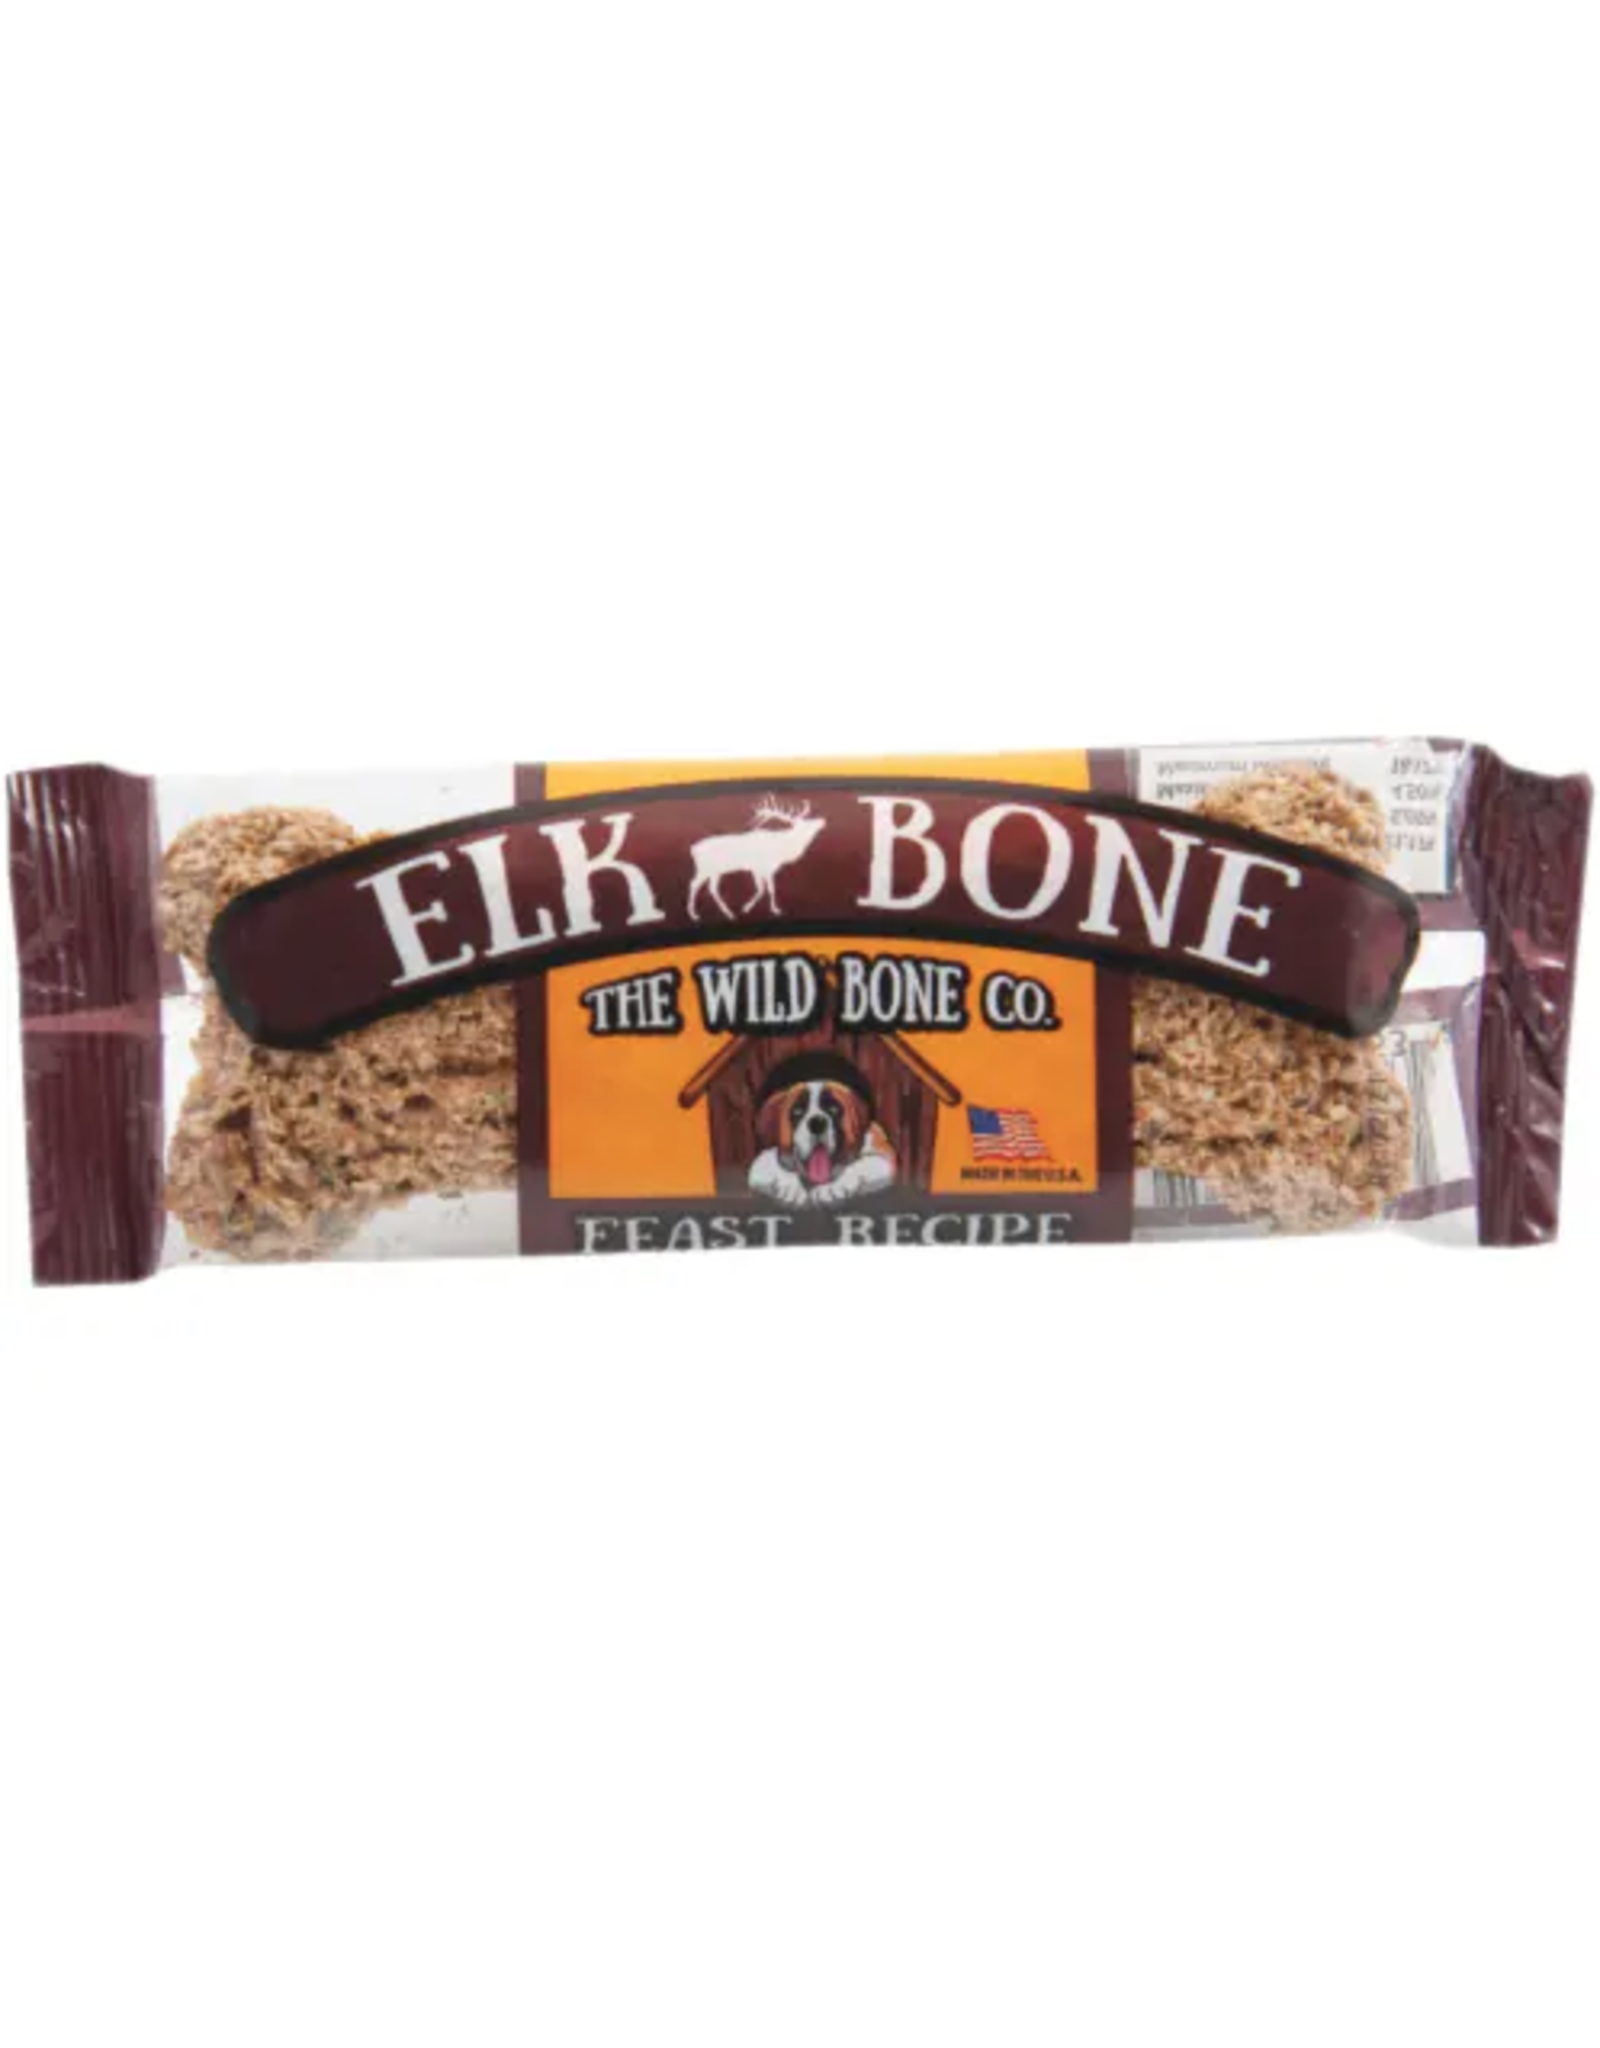 The Wild Bone Co. The Wild Bone Co. Elk Bone Feast Recipe 1oz